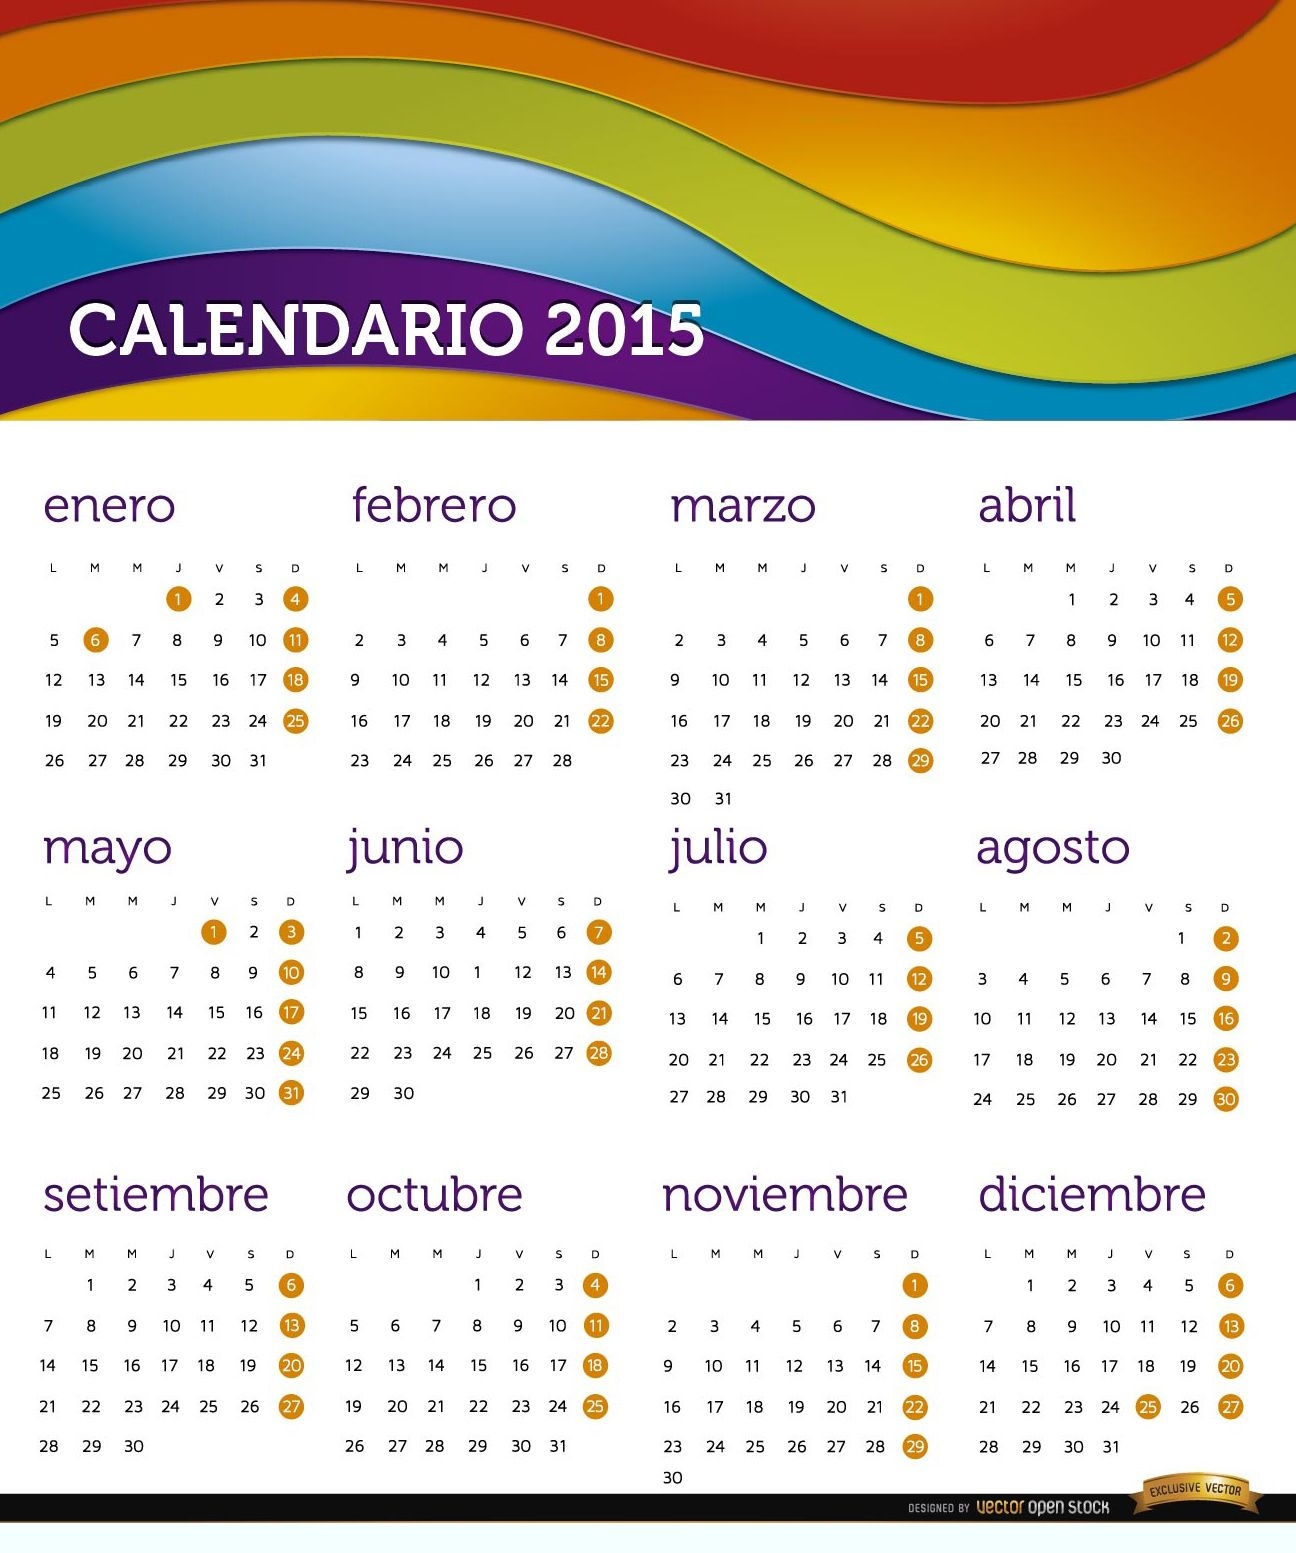 Calendario arco?ris 2015 en espa?ol